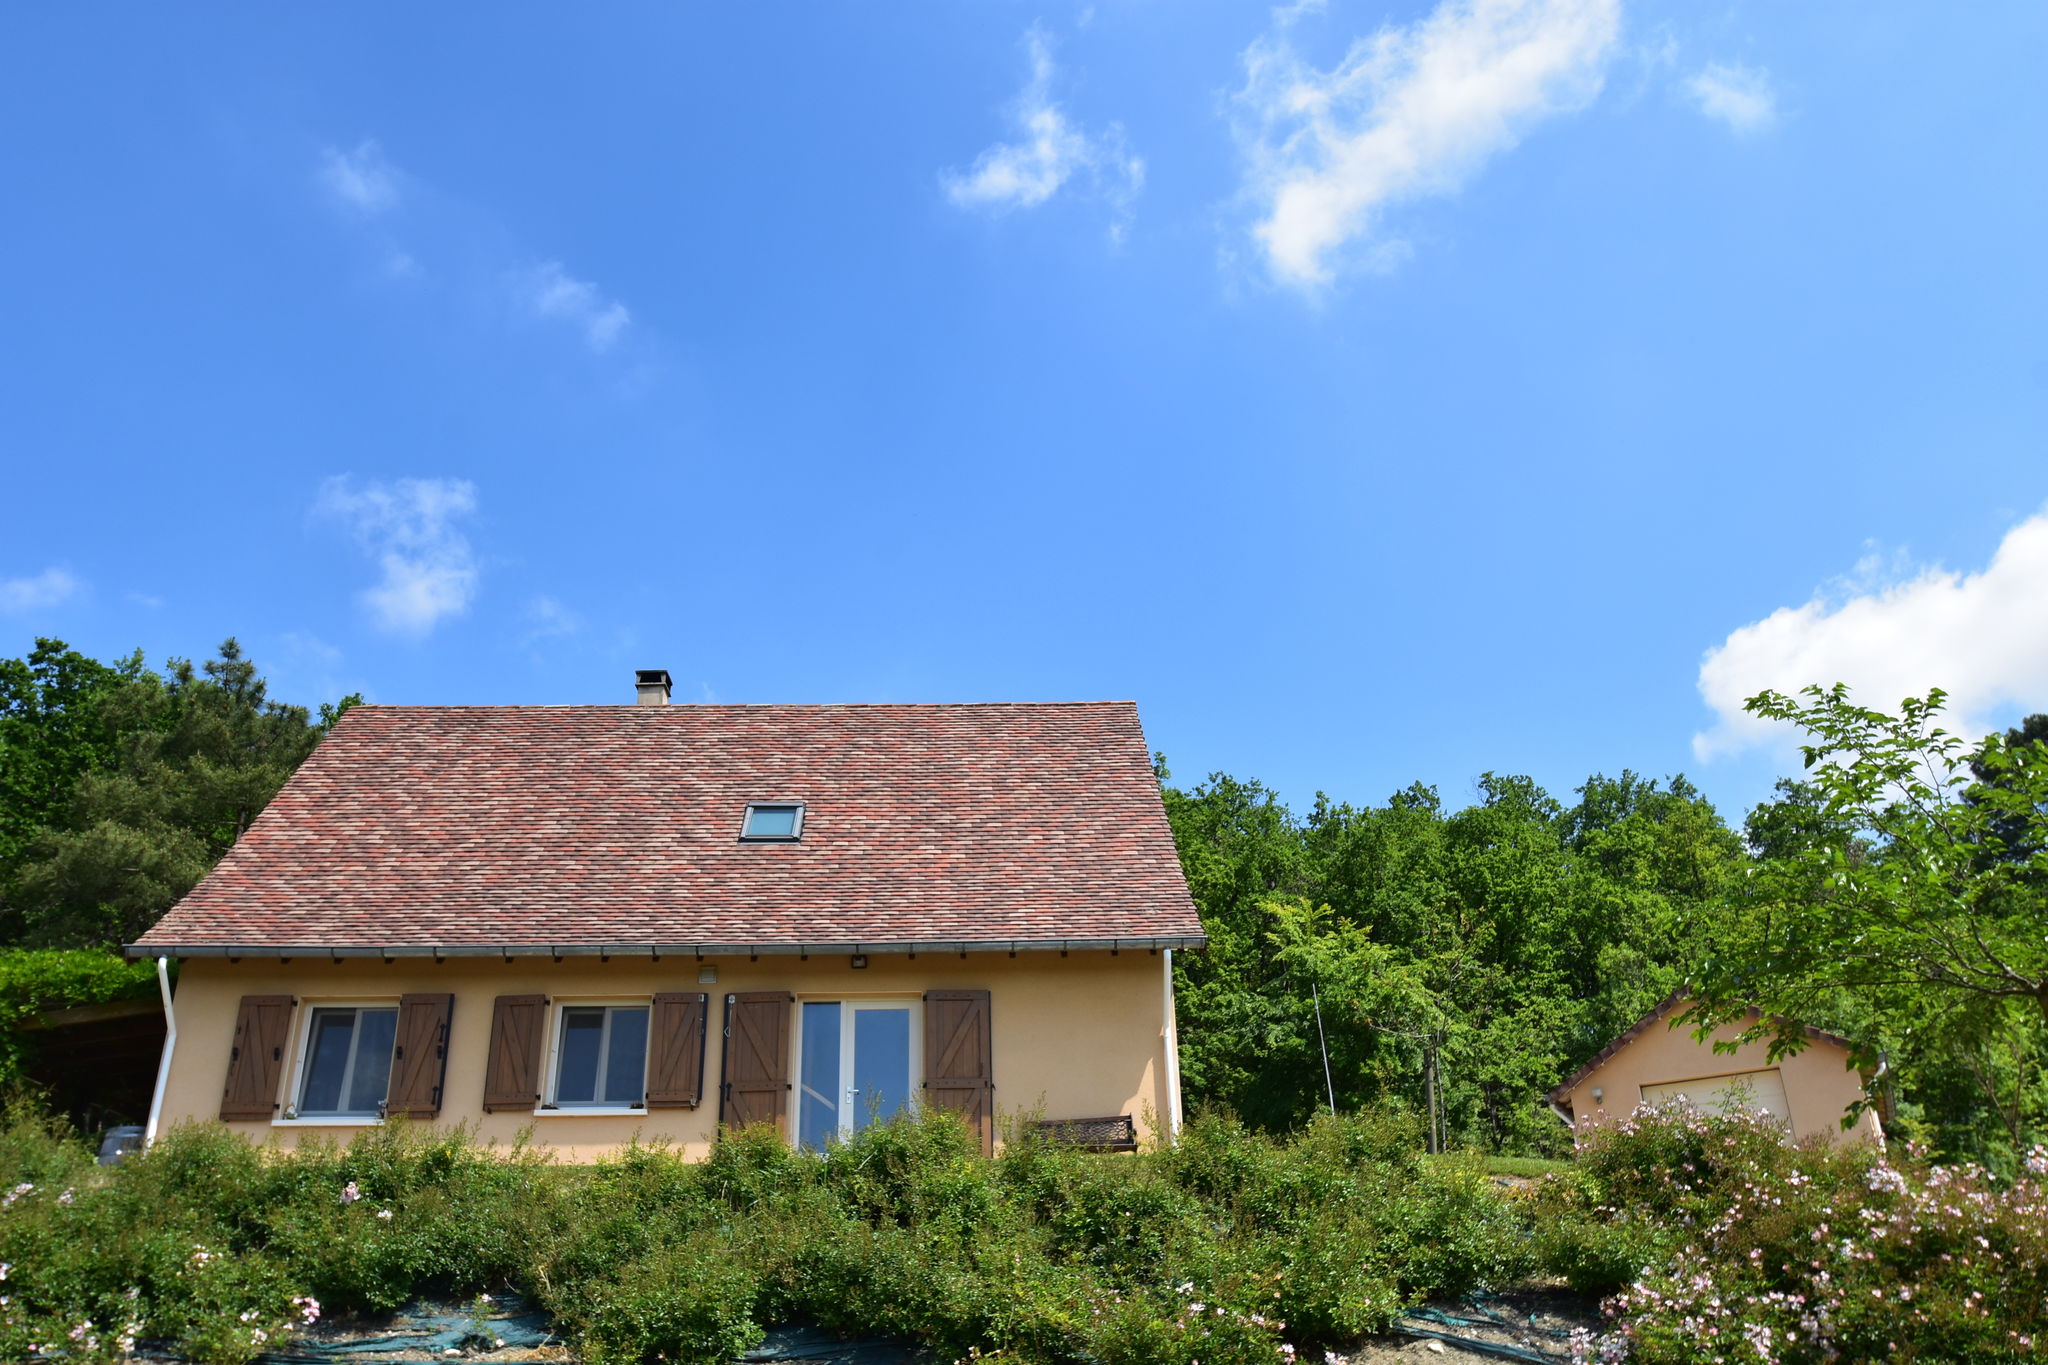 Prachtig modern huis met opzetzwembad en schitterend uitzicht over de wijnvelden